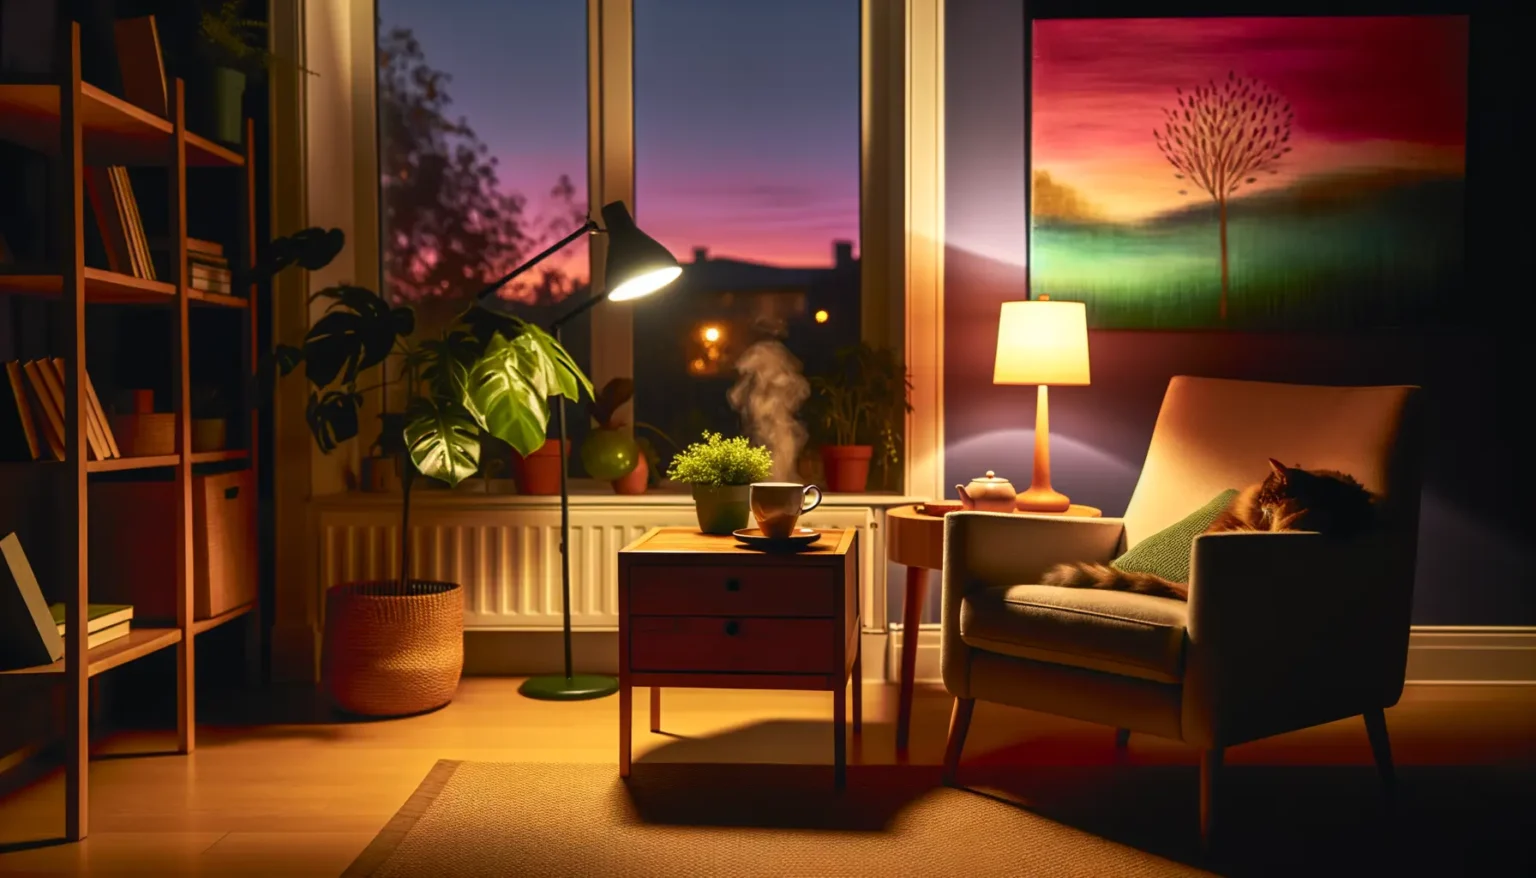 Gemütliches Wohnzimmer bei Abenddämmerung mit warm beleuchtetem Innenraum. Ein bequemer Sessel mit einem schlafenden Kätzchen darauf steht neben einem kleinen Beistelltisch mit einer Lampe und Teekanne. Auf dem anderen Tisch dampft eine Tasse Tee. Ein Bücherregal voller Bücher, Pflanzen auf der Fensterbank, und ein großes, farbenfrohes Wandbild eines Baumes ergänzen die friedvolle Szenerie. Draußen durch das Fenster ist ein stimmungsvoller Sonnenuntergang mit rosa und blauen Farbtönen sichtbar.